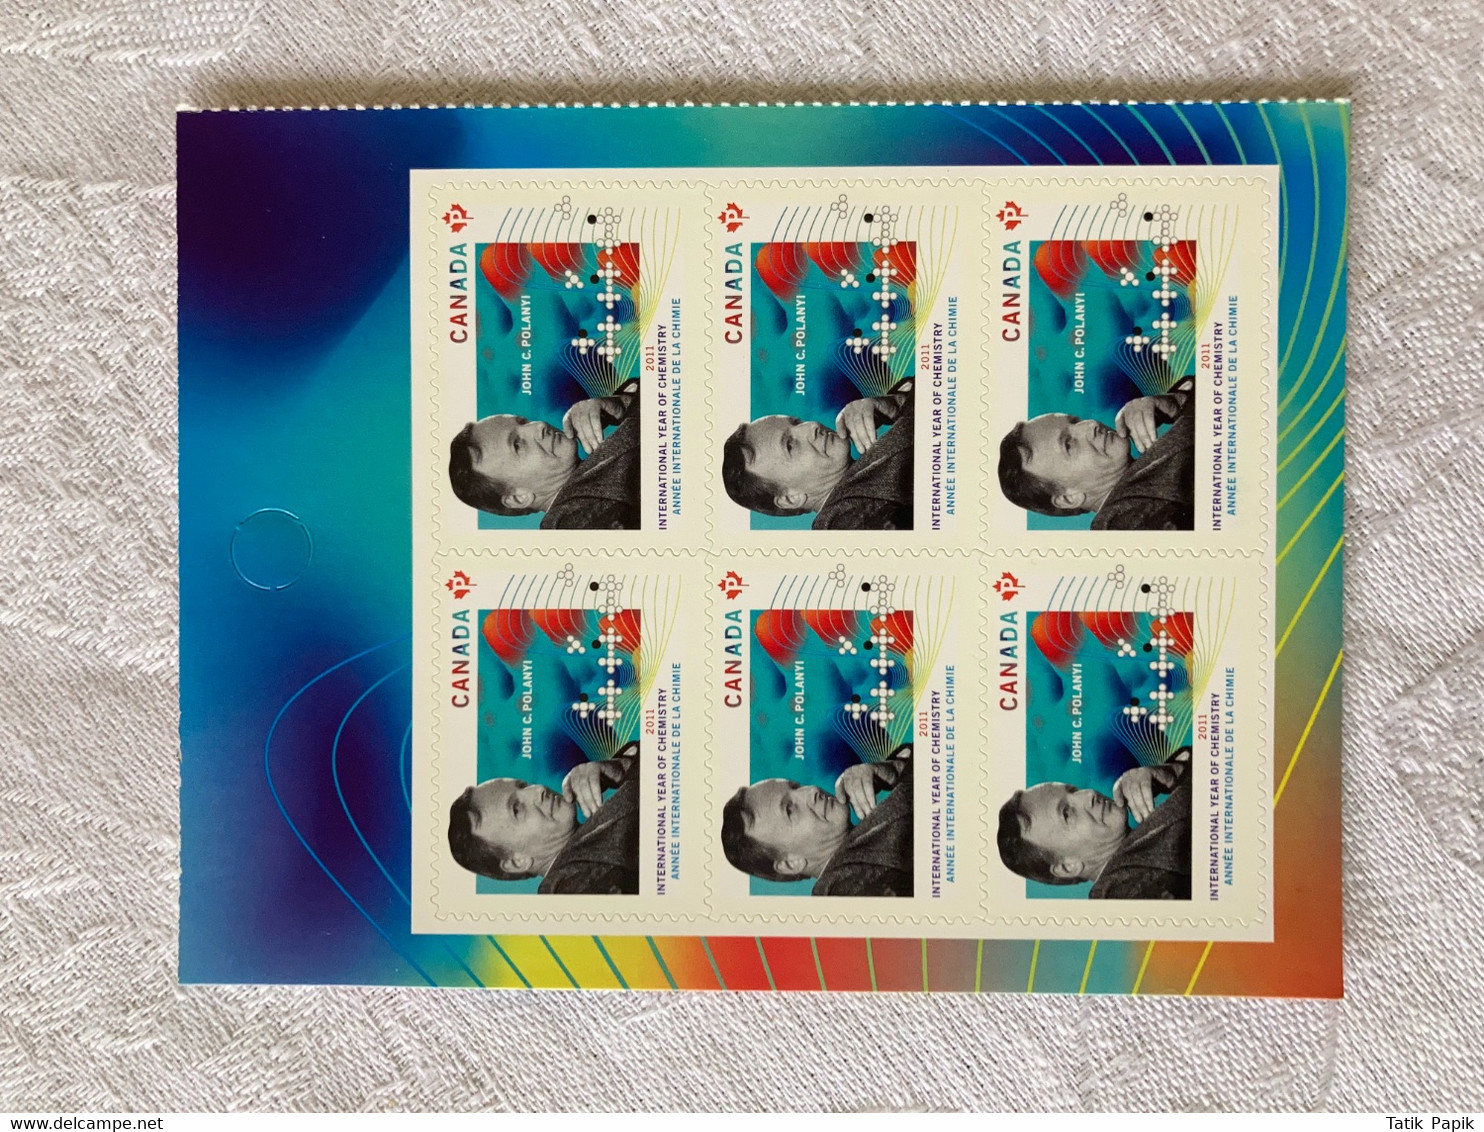 2011 Canada Année Internationale De La Chimie Timbre Permanent Stamps - Pages De Carnets